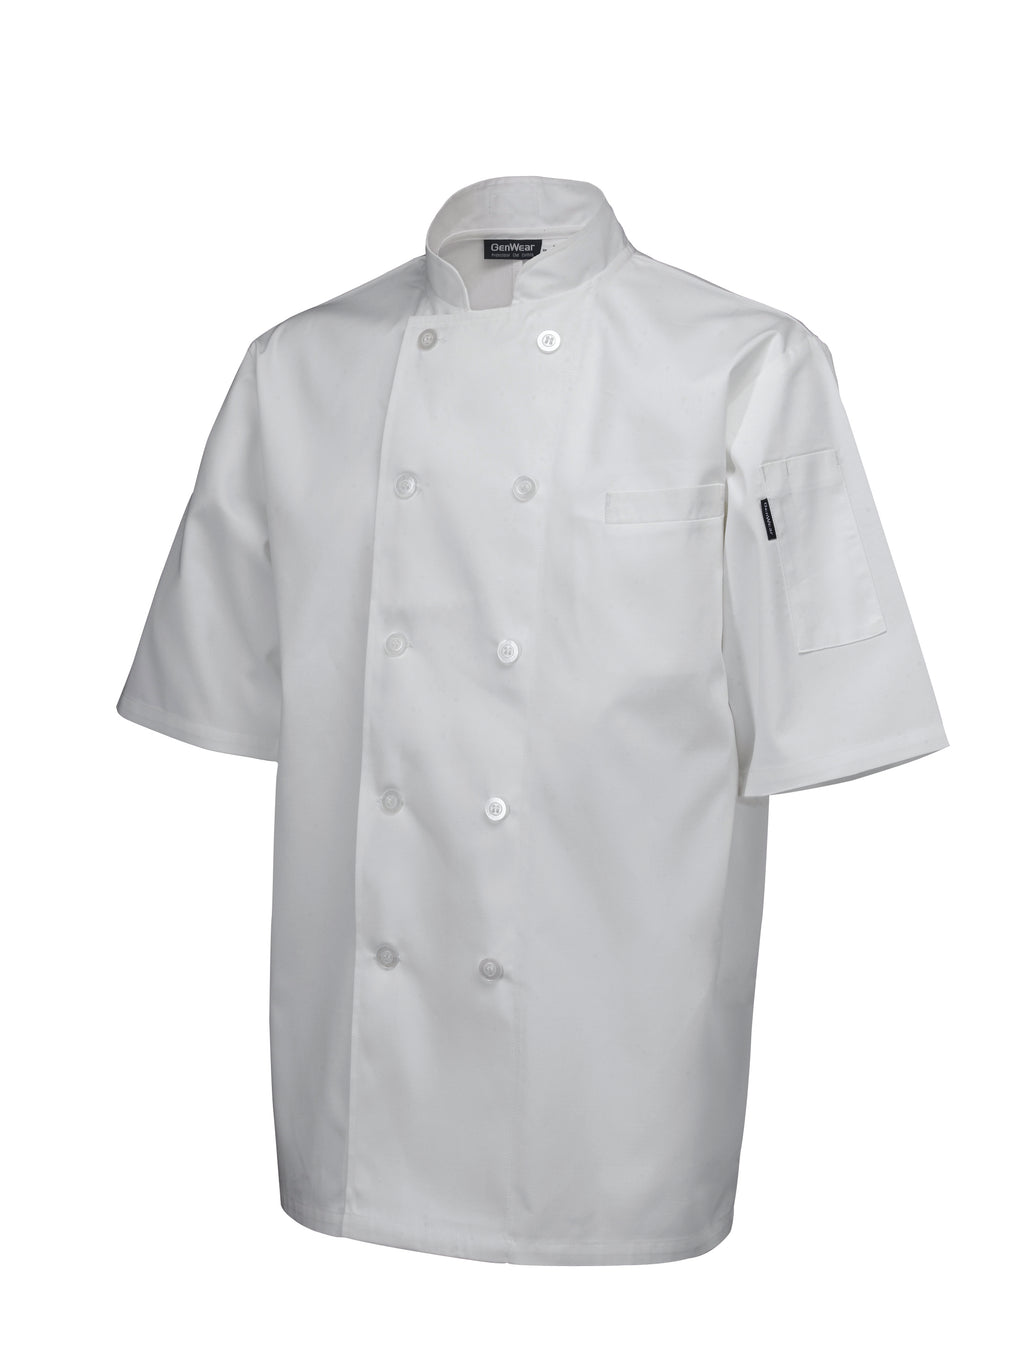 Ego Chef Standard Jacket (Short Sleeve) White